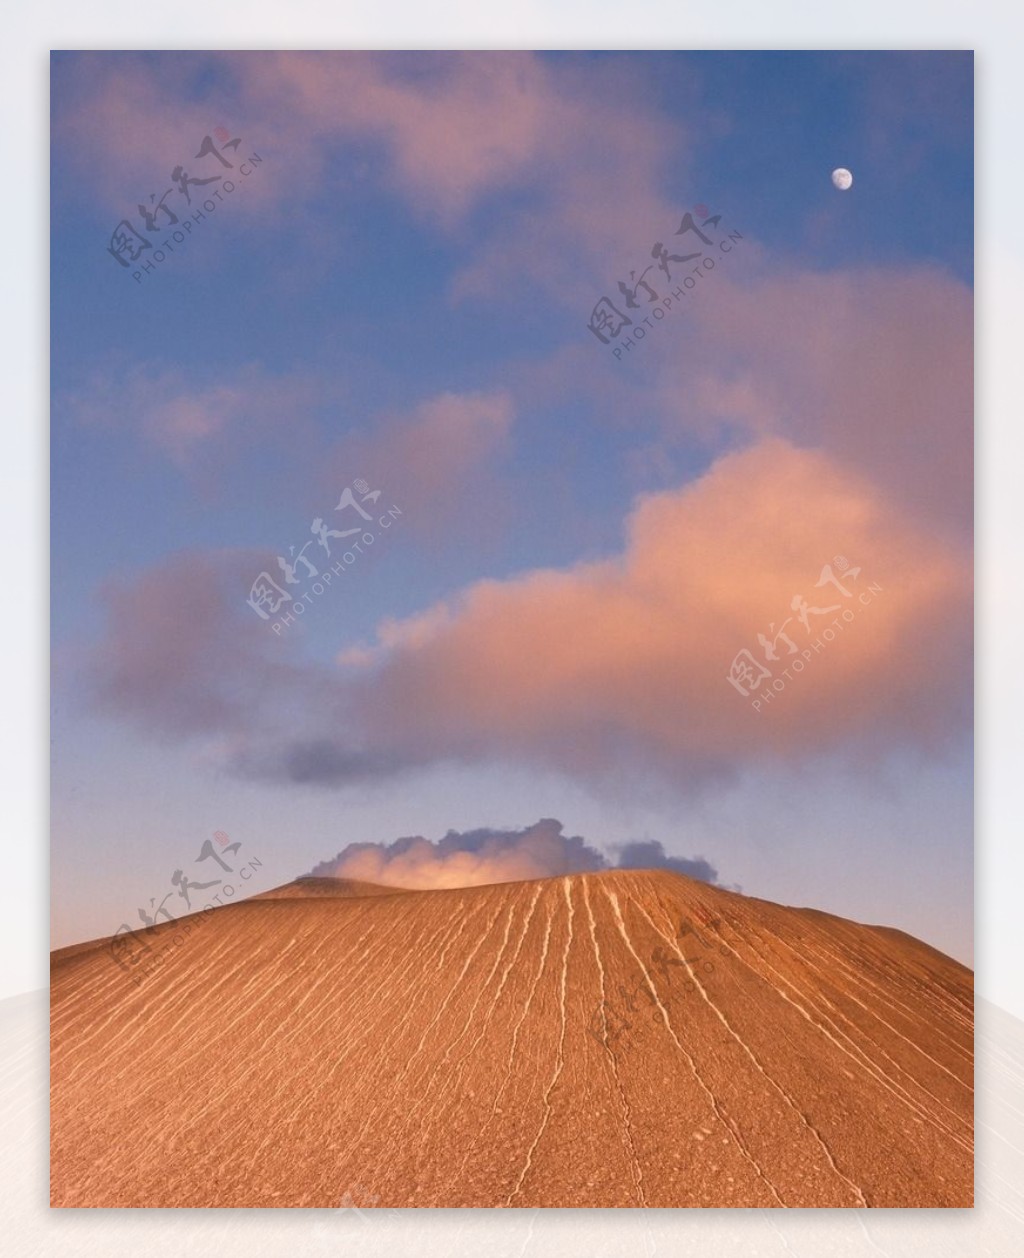 沙漠迷景图片